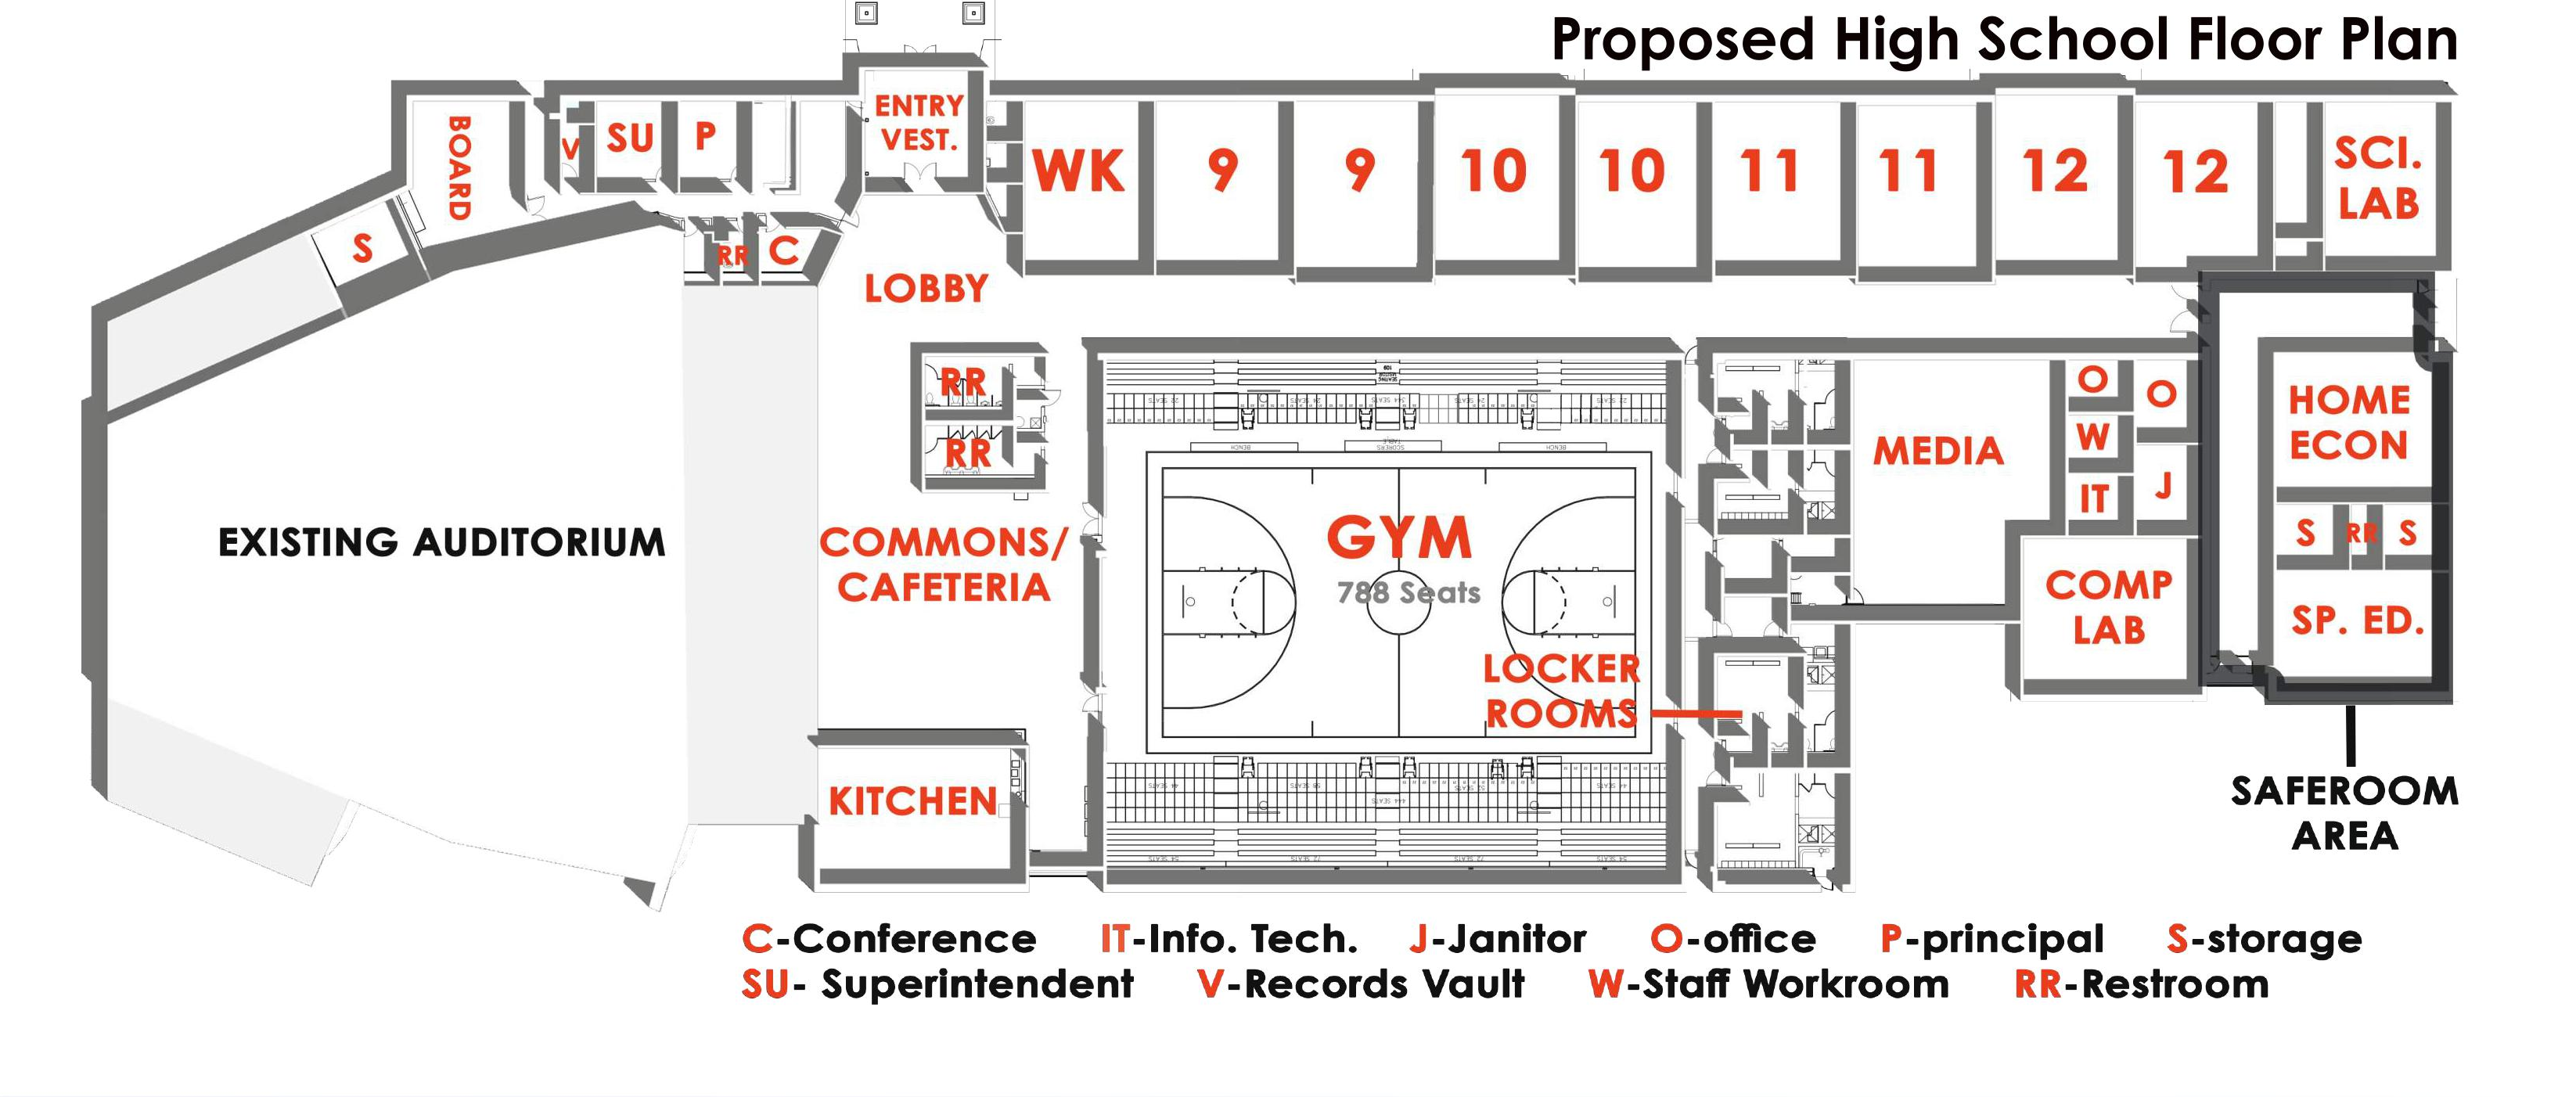 Floor plan of proposed new high school building